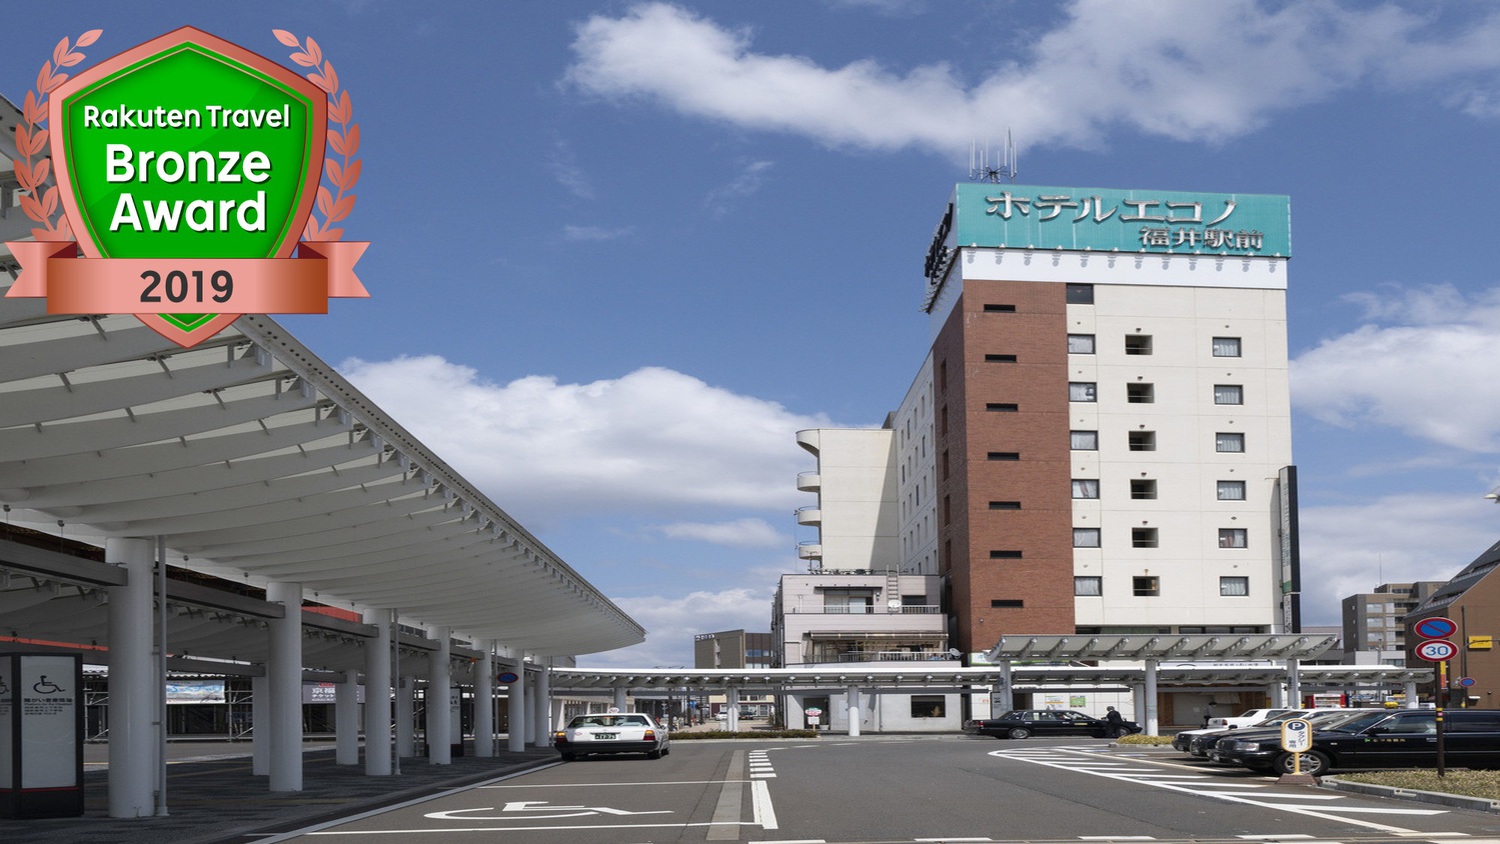 ホテルエコノ福井駅前 設備 アメニティ 基本情報 楽天トラベル